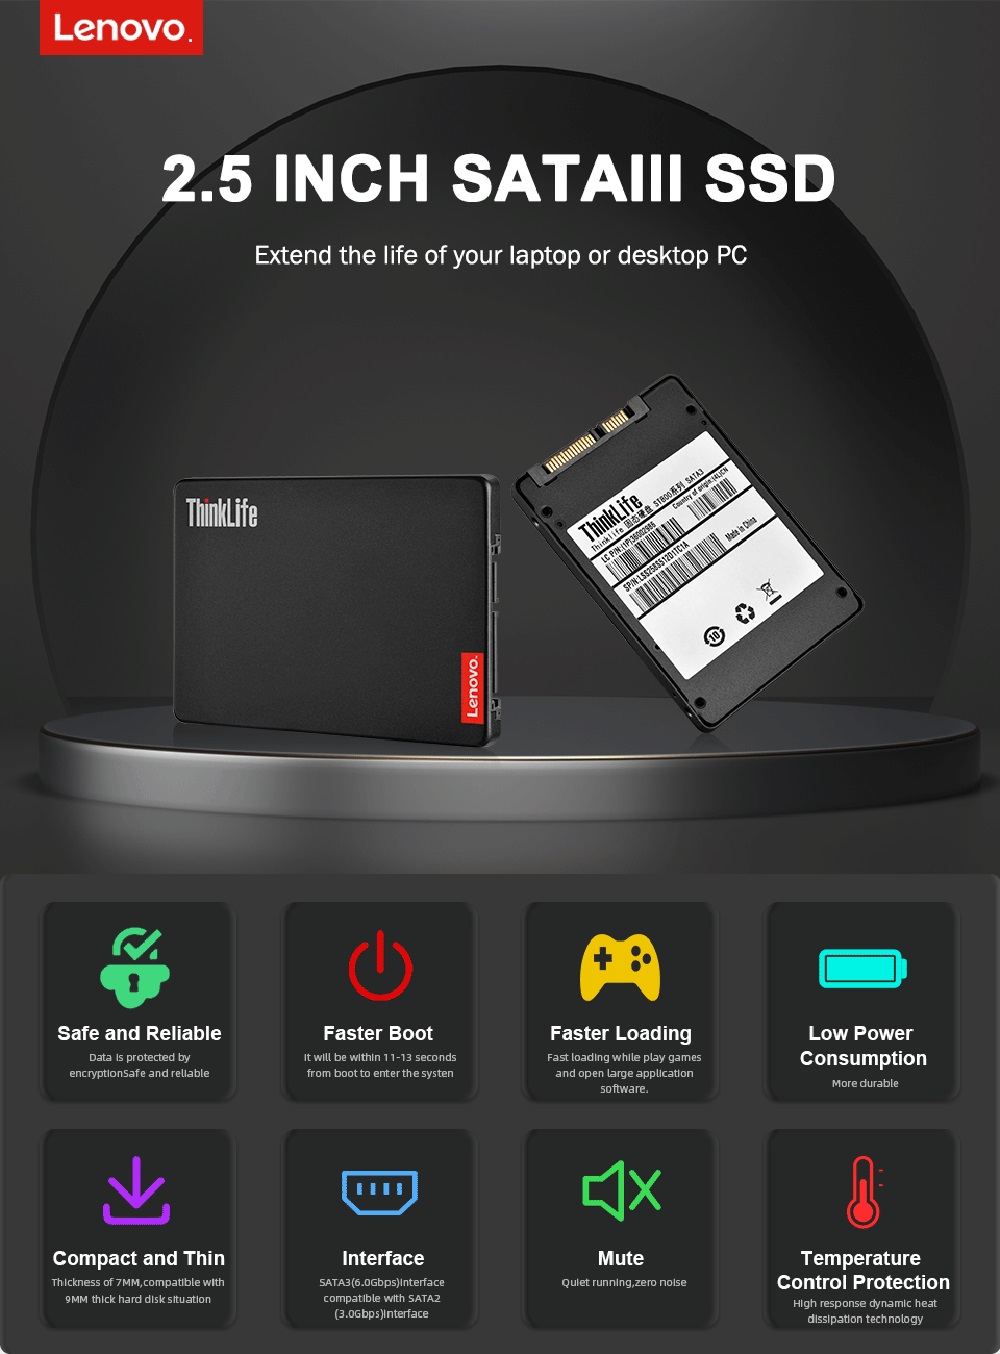 Lenovo-ThinkLife-ST800-25-inch-SATA3-Solid-State-Drive-128GB256GB512GB1TB-TLC-Nand-Flash-SSD-Hard-Di-1948322-1